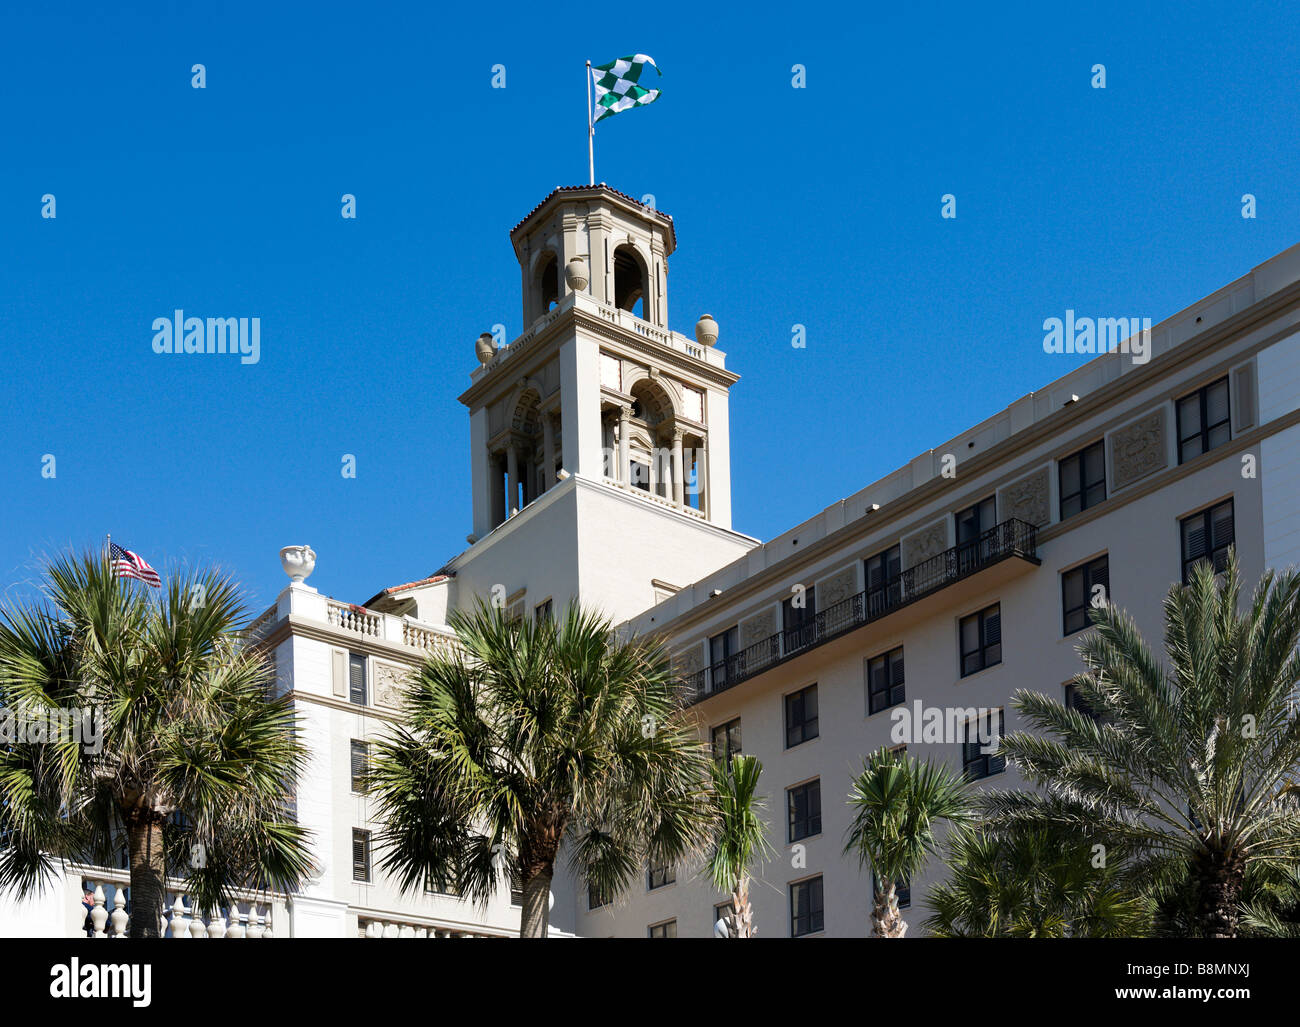 Il famoso Breakers Hotel in Palm Beach, Gold Coast, Florida, Stati Uniti d'America Foto Stock